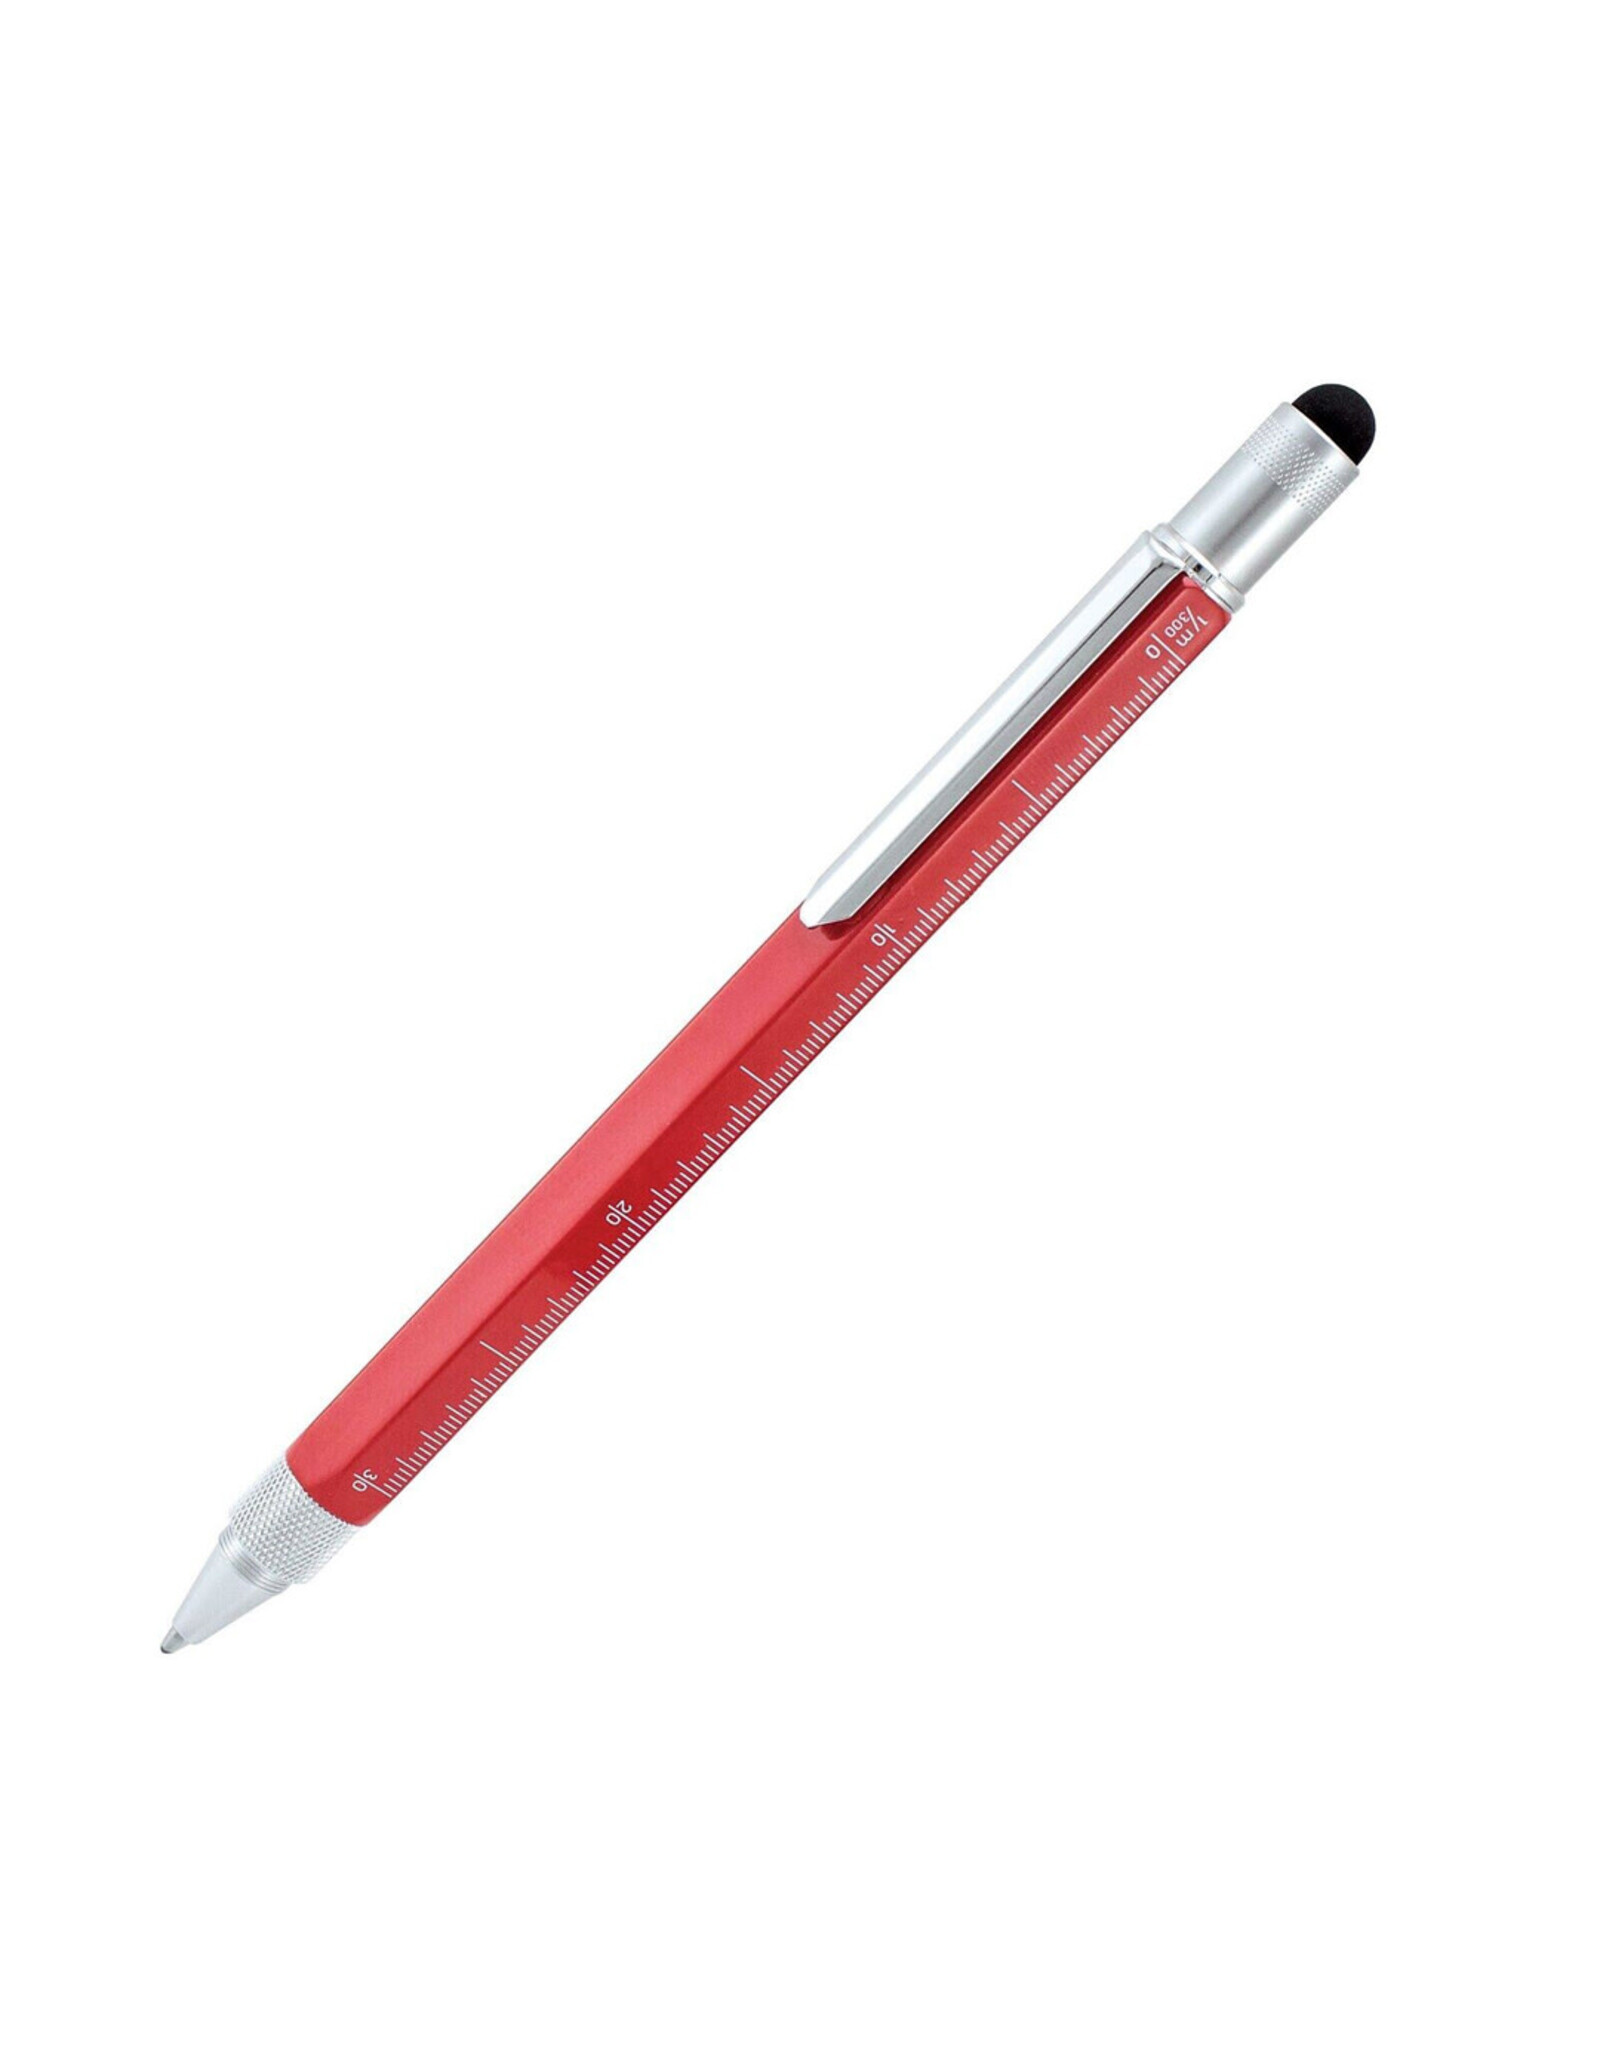 Monteverde One Touch Stylus Tool Ballpoint Pen, Red